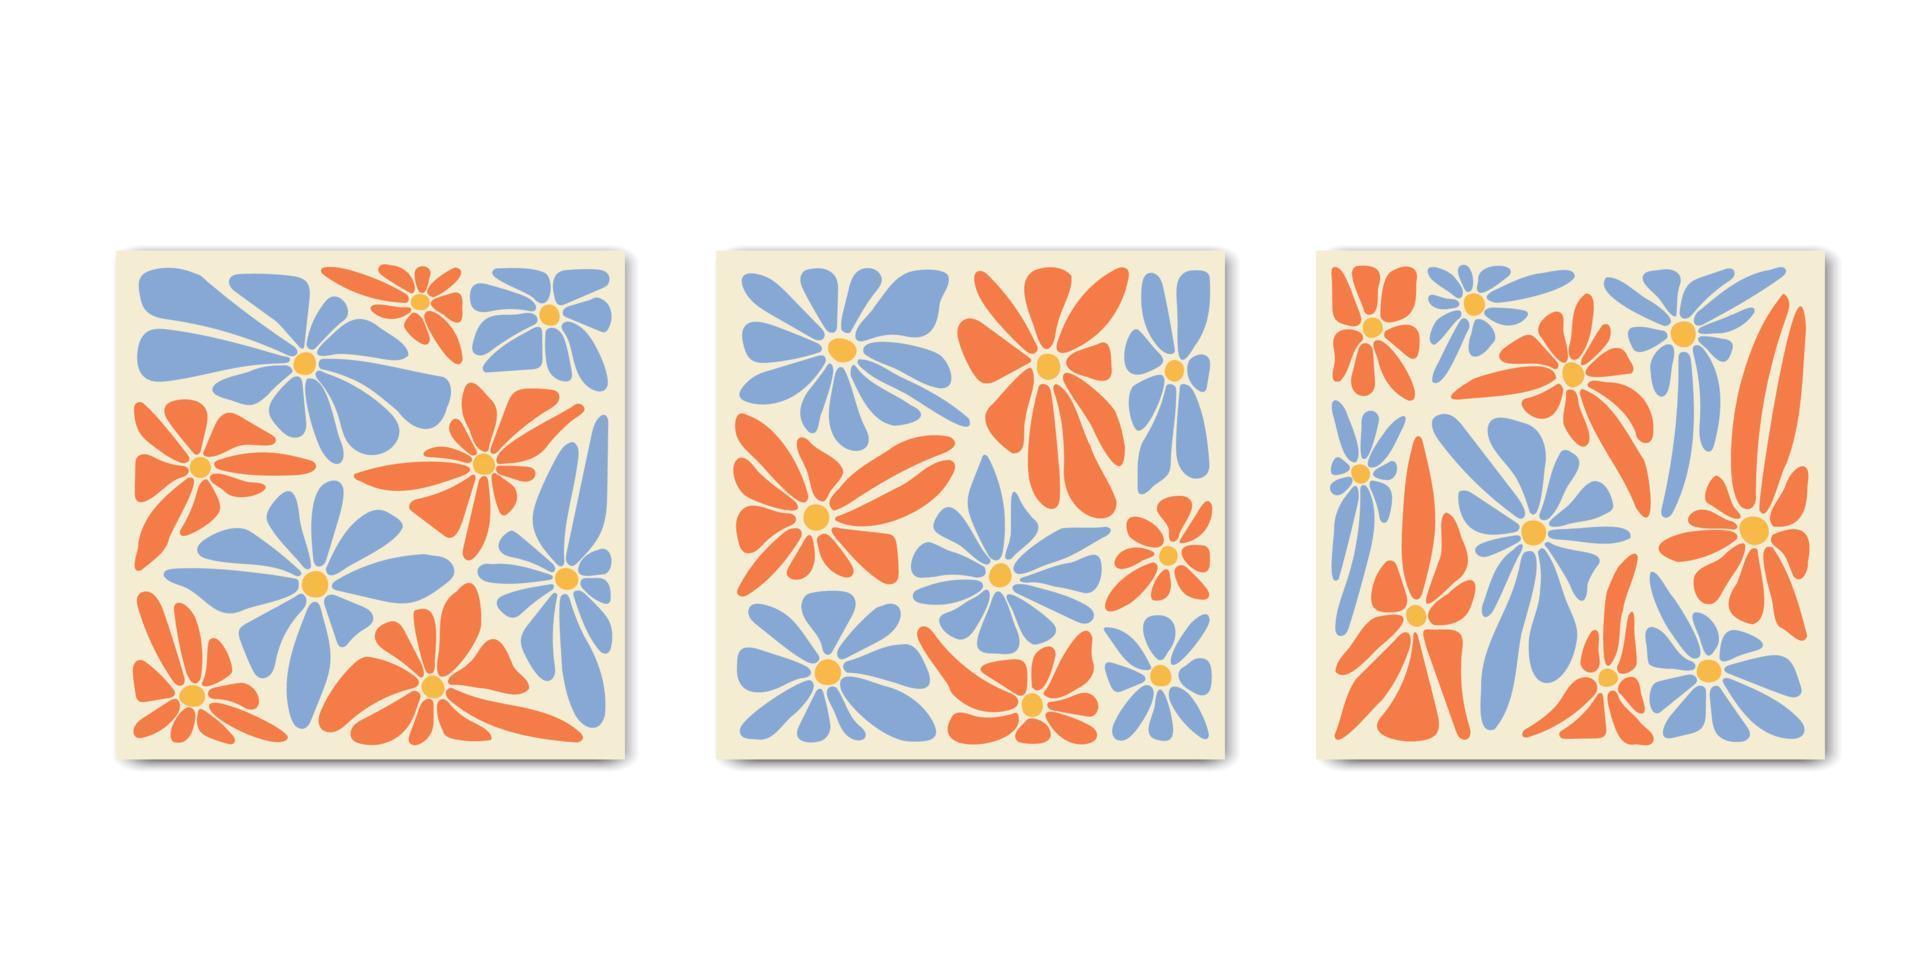 1970 pósters cuadrados de margaritas maravillosas retro. diseño retro de cubiertas onduladas abstractas. fondo de flor psicodélica con curvas. ilustración vectorial vector